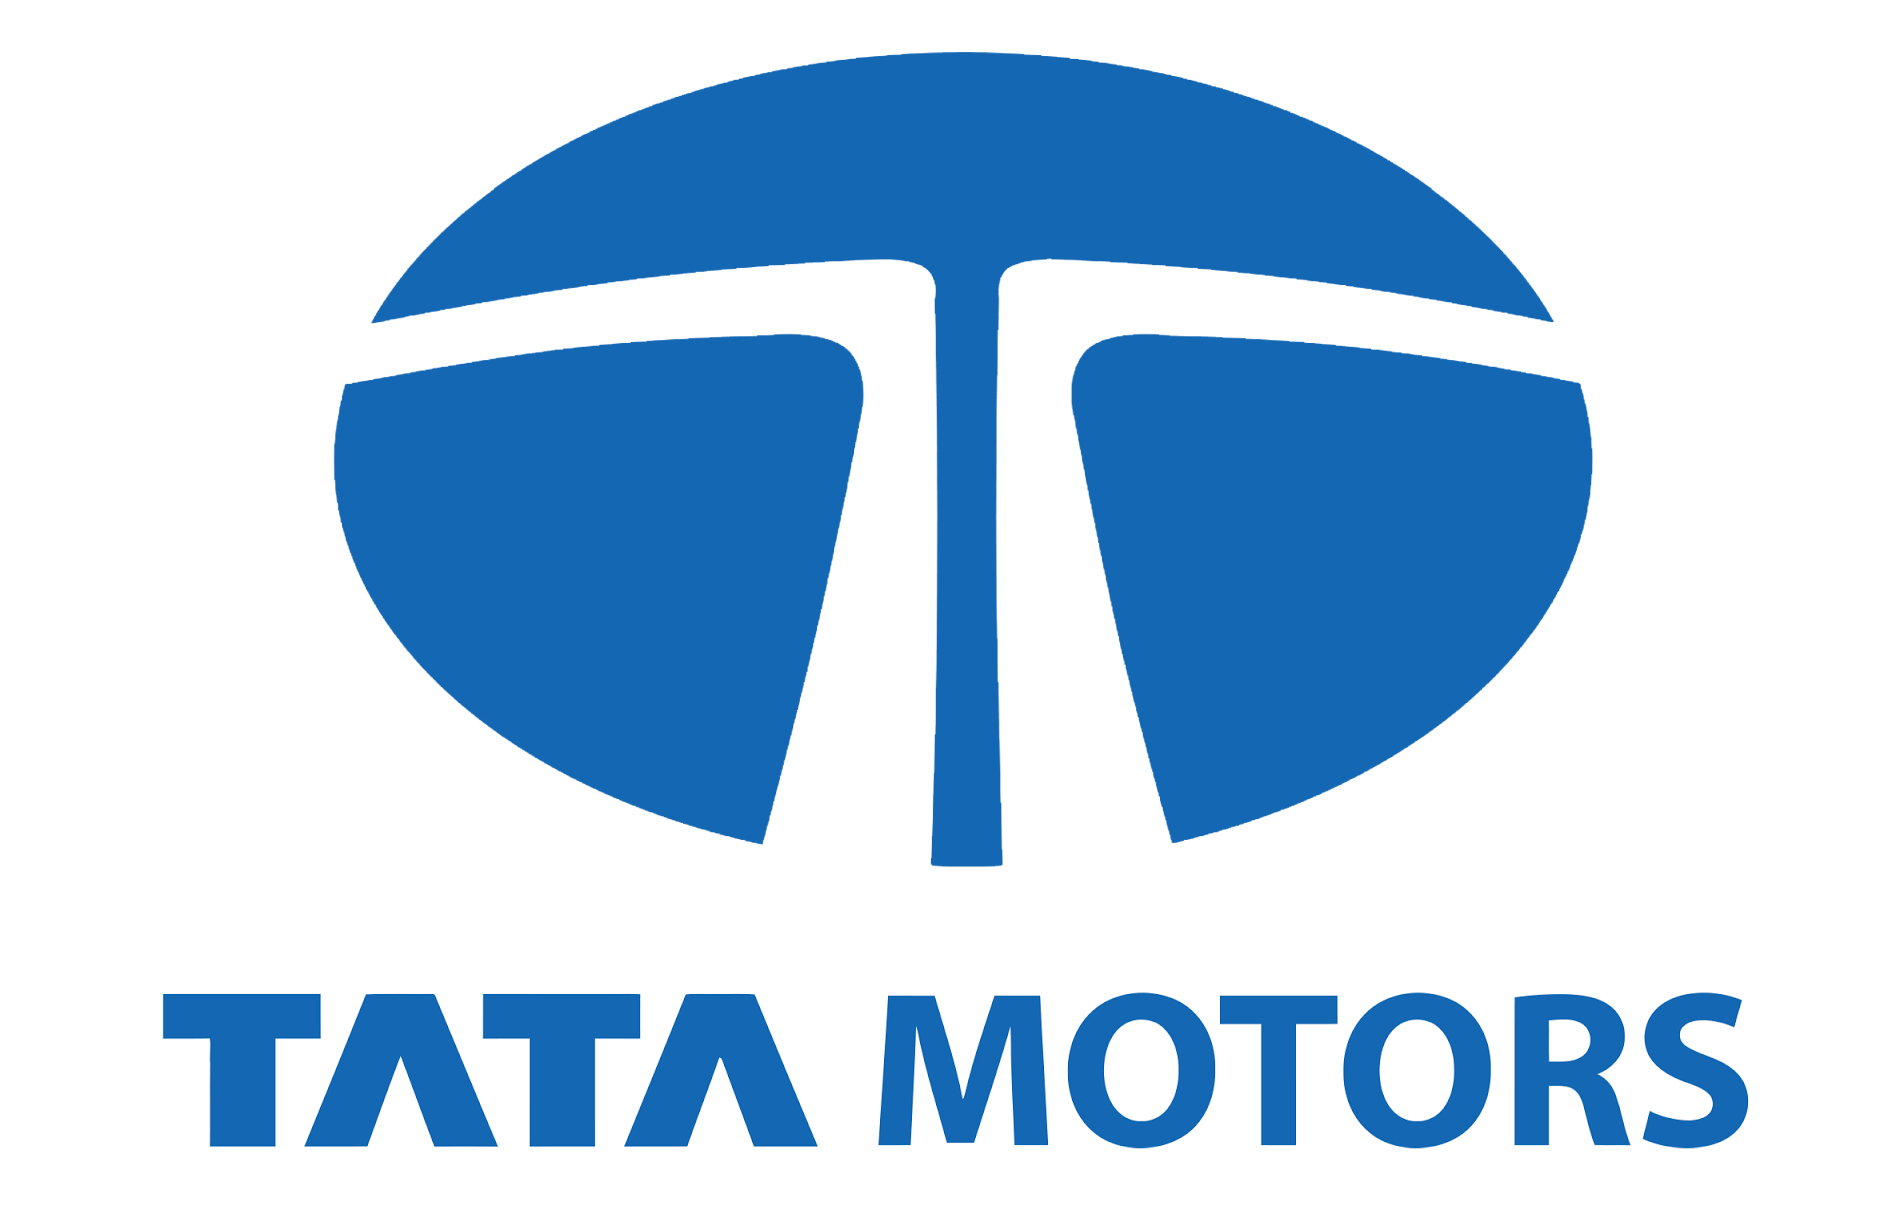 Siva Sankar Motors - Tata Motors Dealer Logo